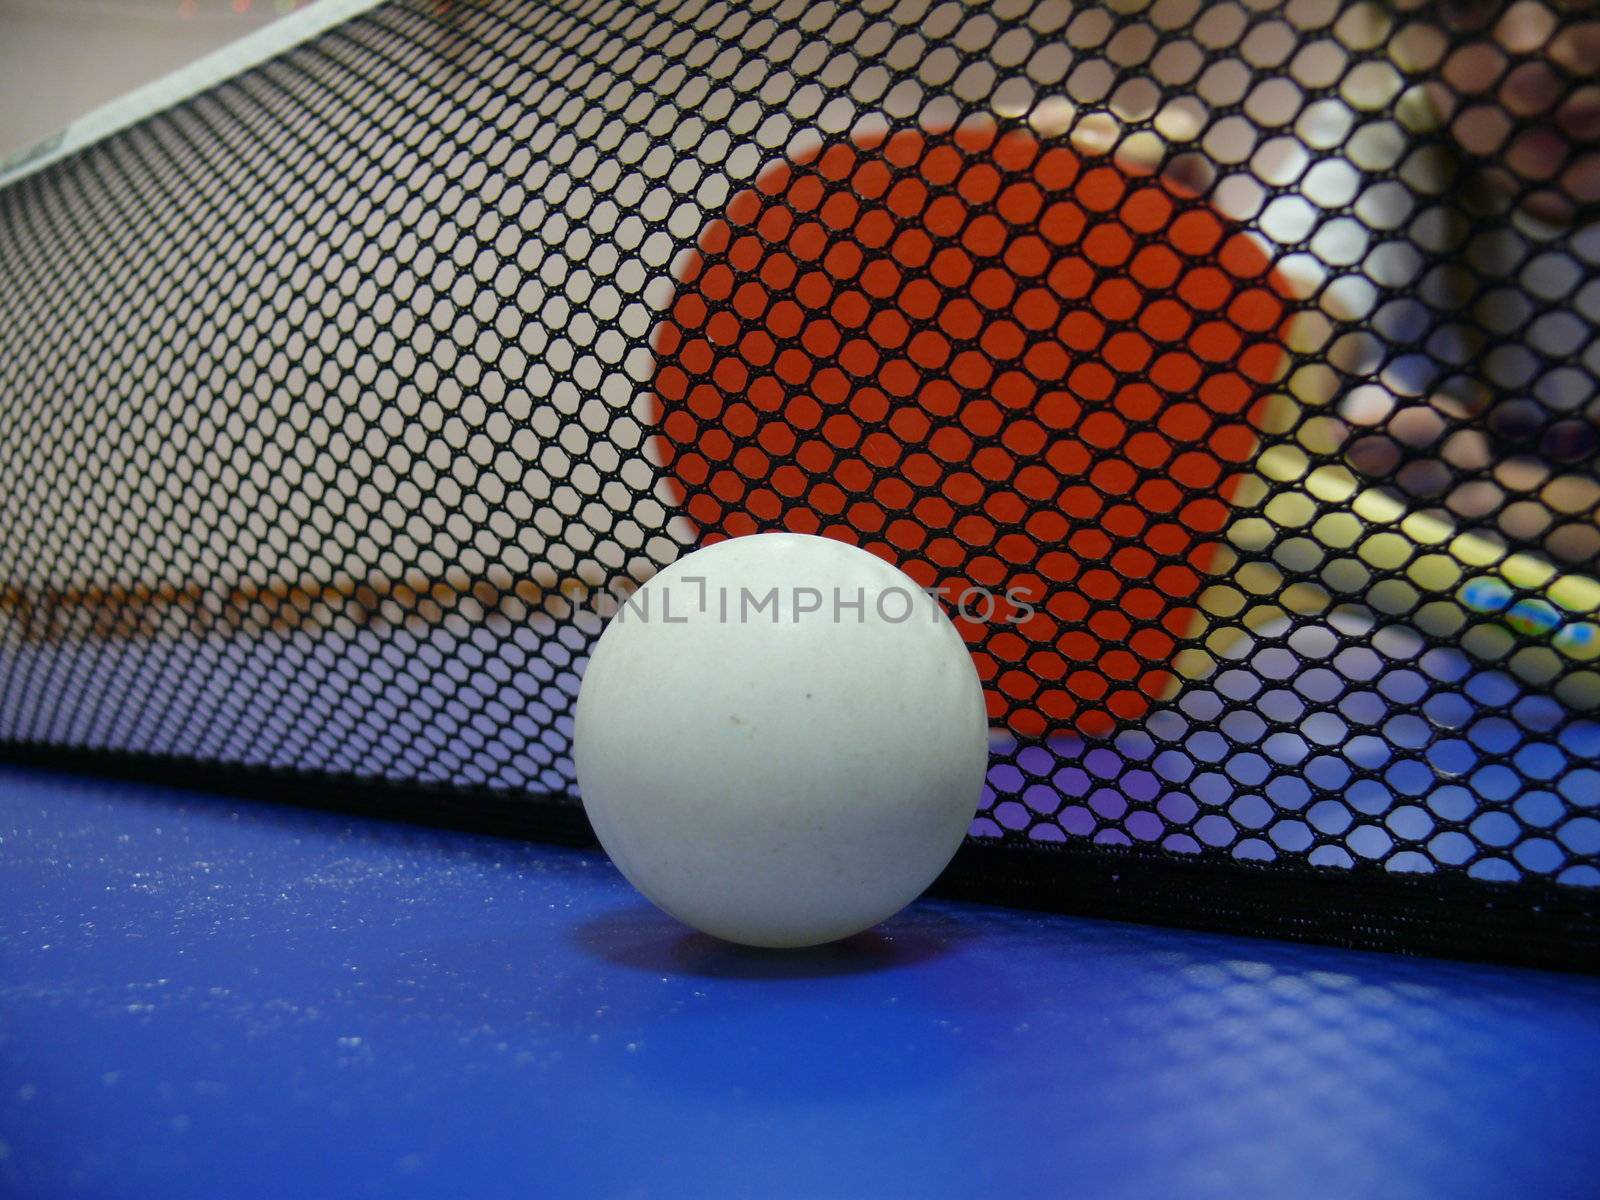 Pingpong ball and racket